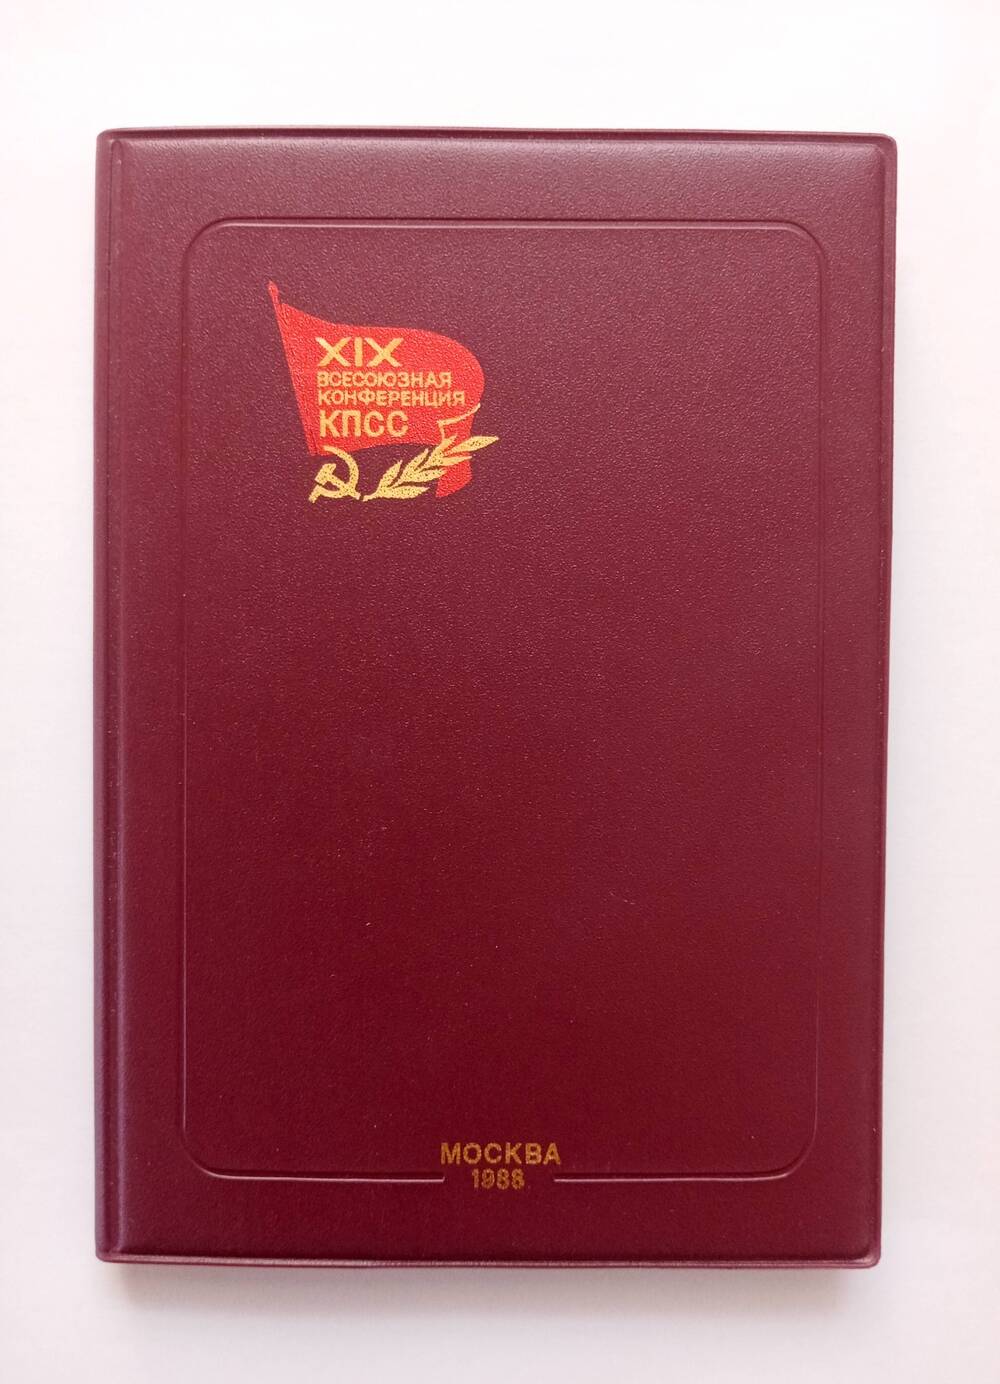 Записная книжка делегата XIX Всесоюзной конференции КПСС